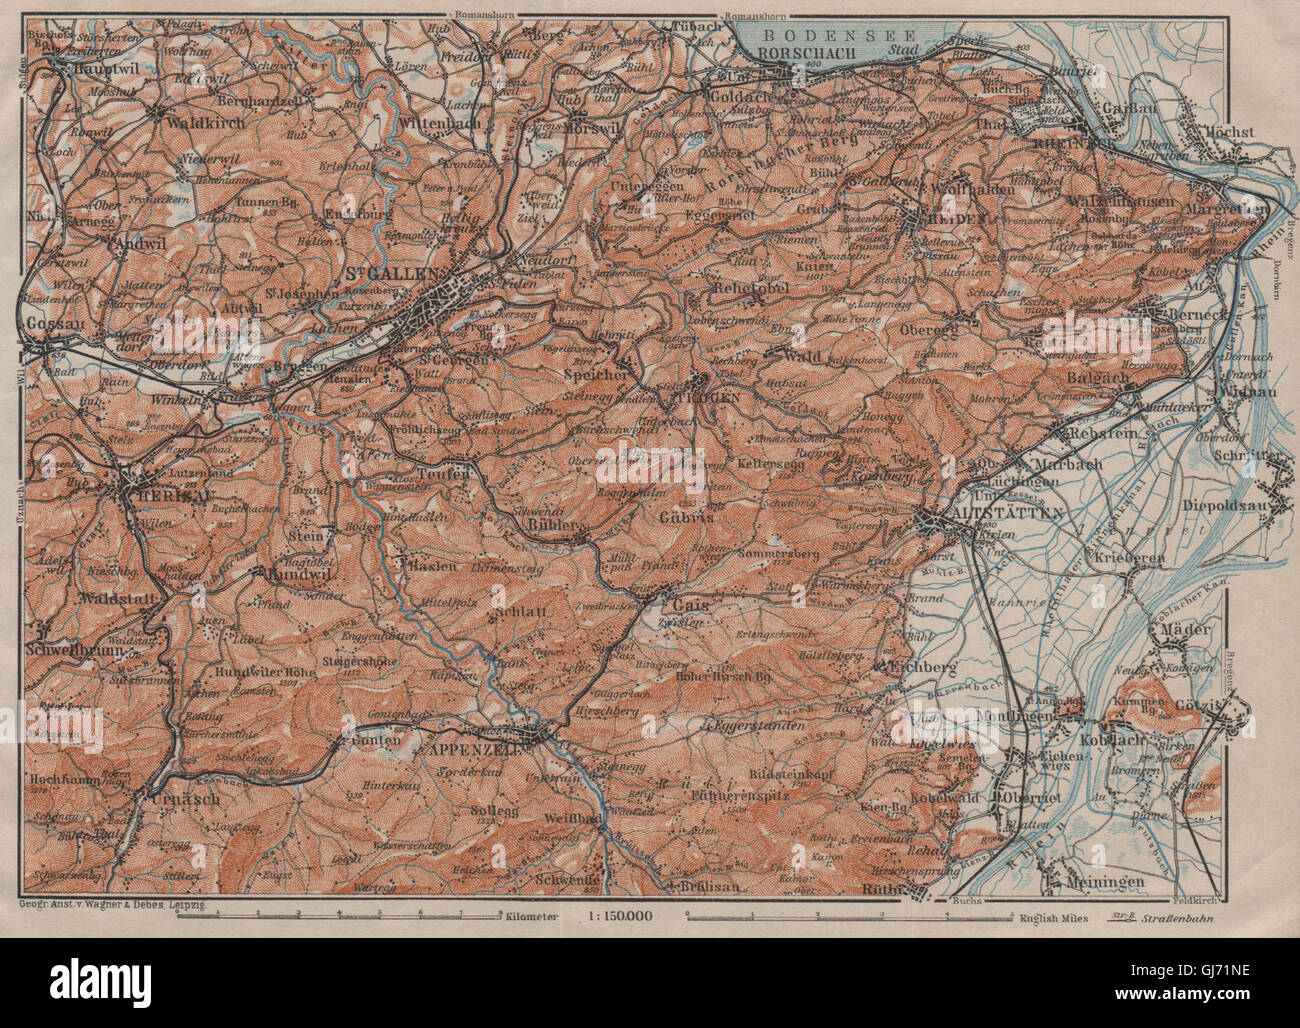 ST GALLEN/APPENZELL area. Herigau Altstätten Heiden Rheineck Rorschach, 1911 map Stock Photo